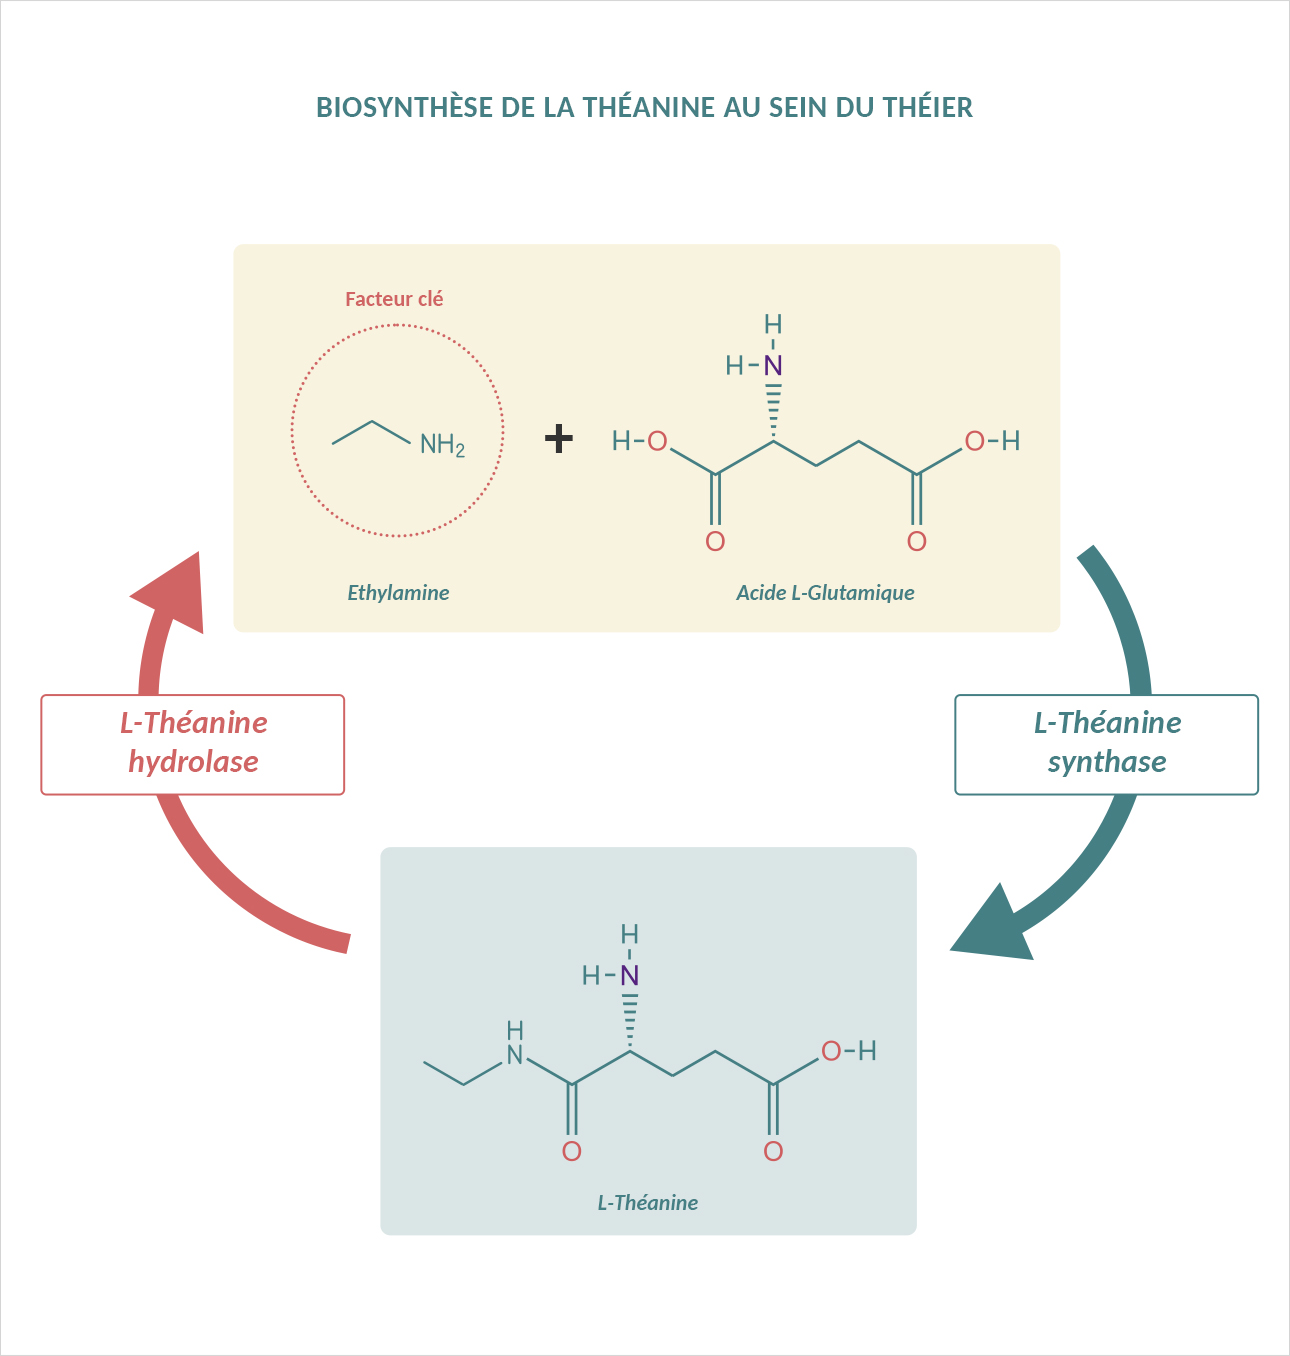 Schéma présentant la biosynthèse de la théanine au sein du théier